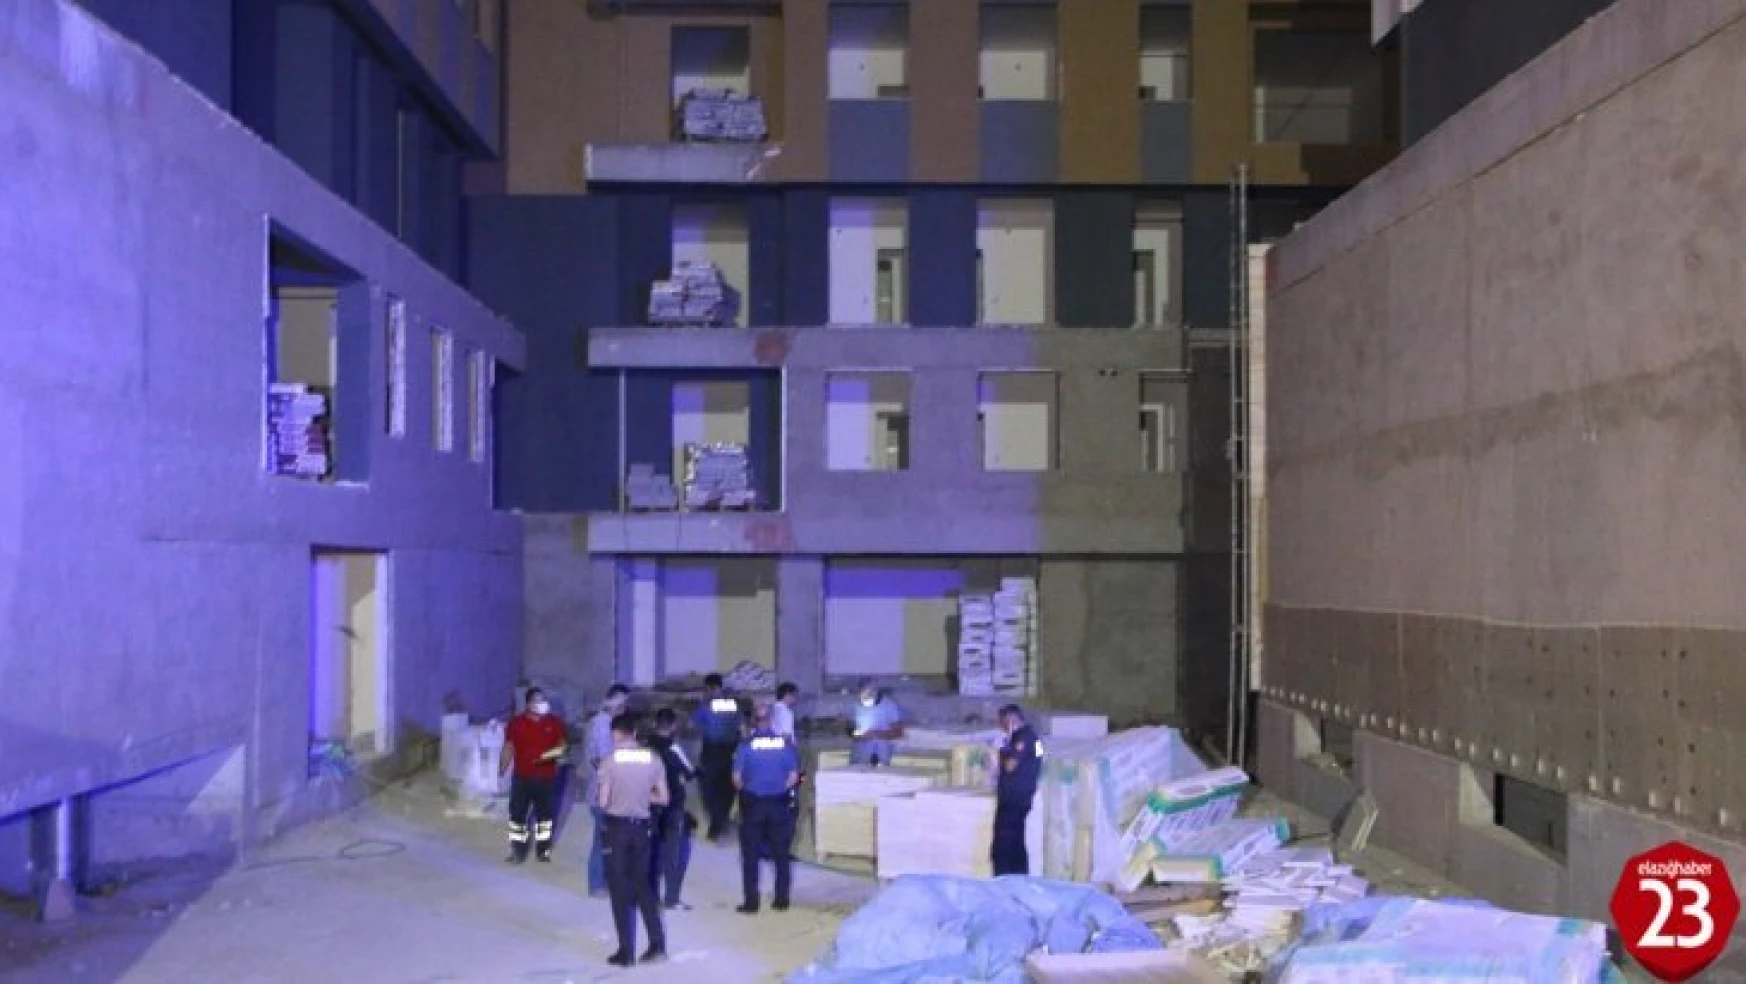 Mustafapaşa Mahallesinde Yeni Evine Taşınmadan Hayatını Kaybetti